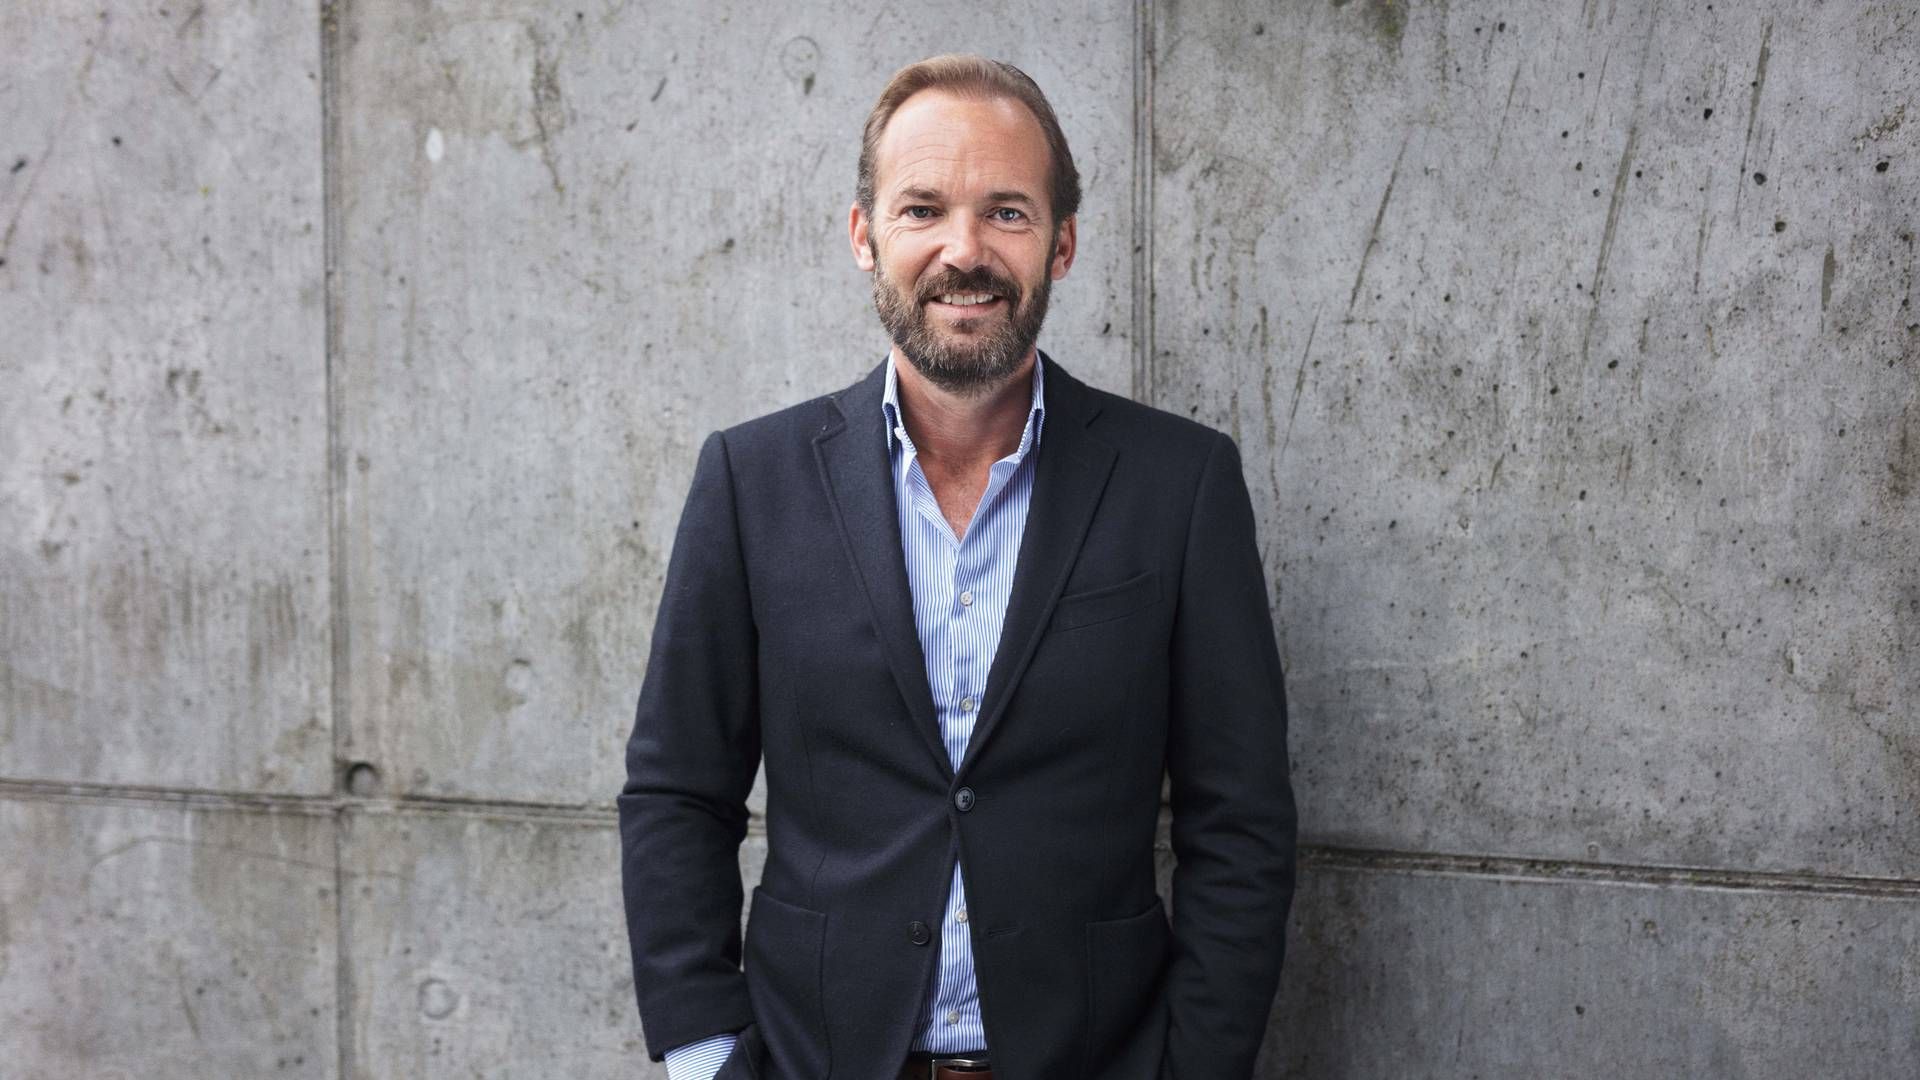 Adm. direktør i Stryhns Gruppen, Kristian Kornerup, forventer, at det på sigt vil komme pålægsproducenten til gode, at man har valgt at absorbere en del af prisstigningerne i løbet af 2022. | Foto: Pr / Stryhns.